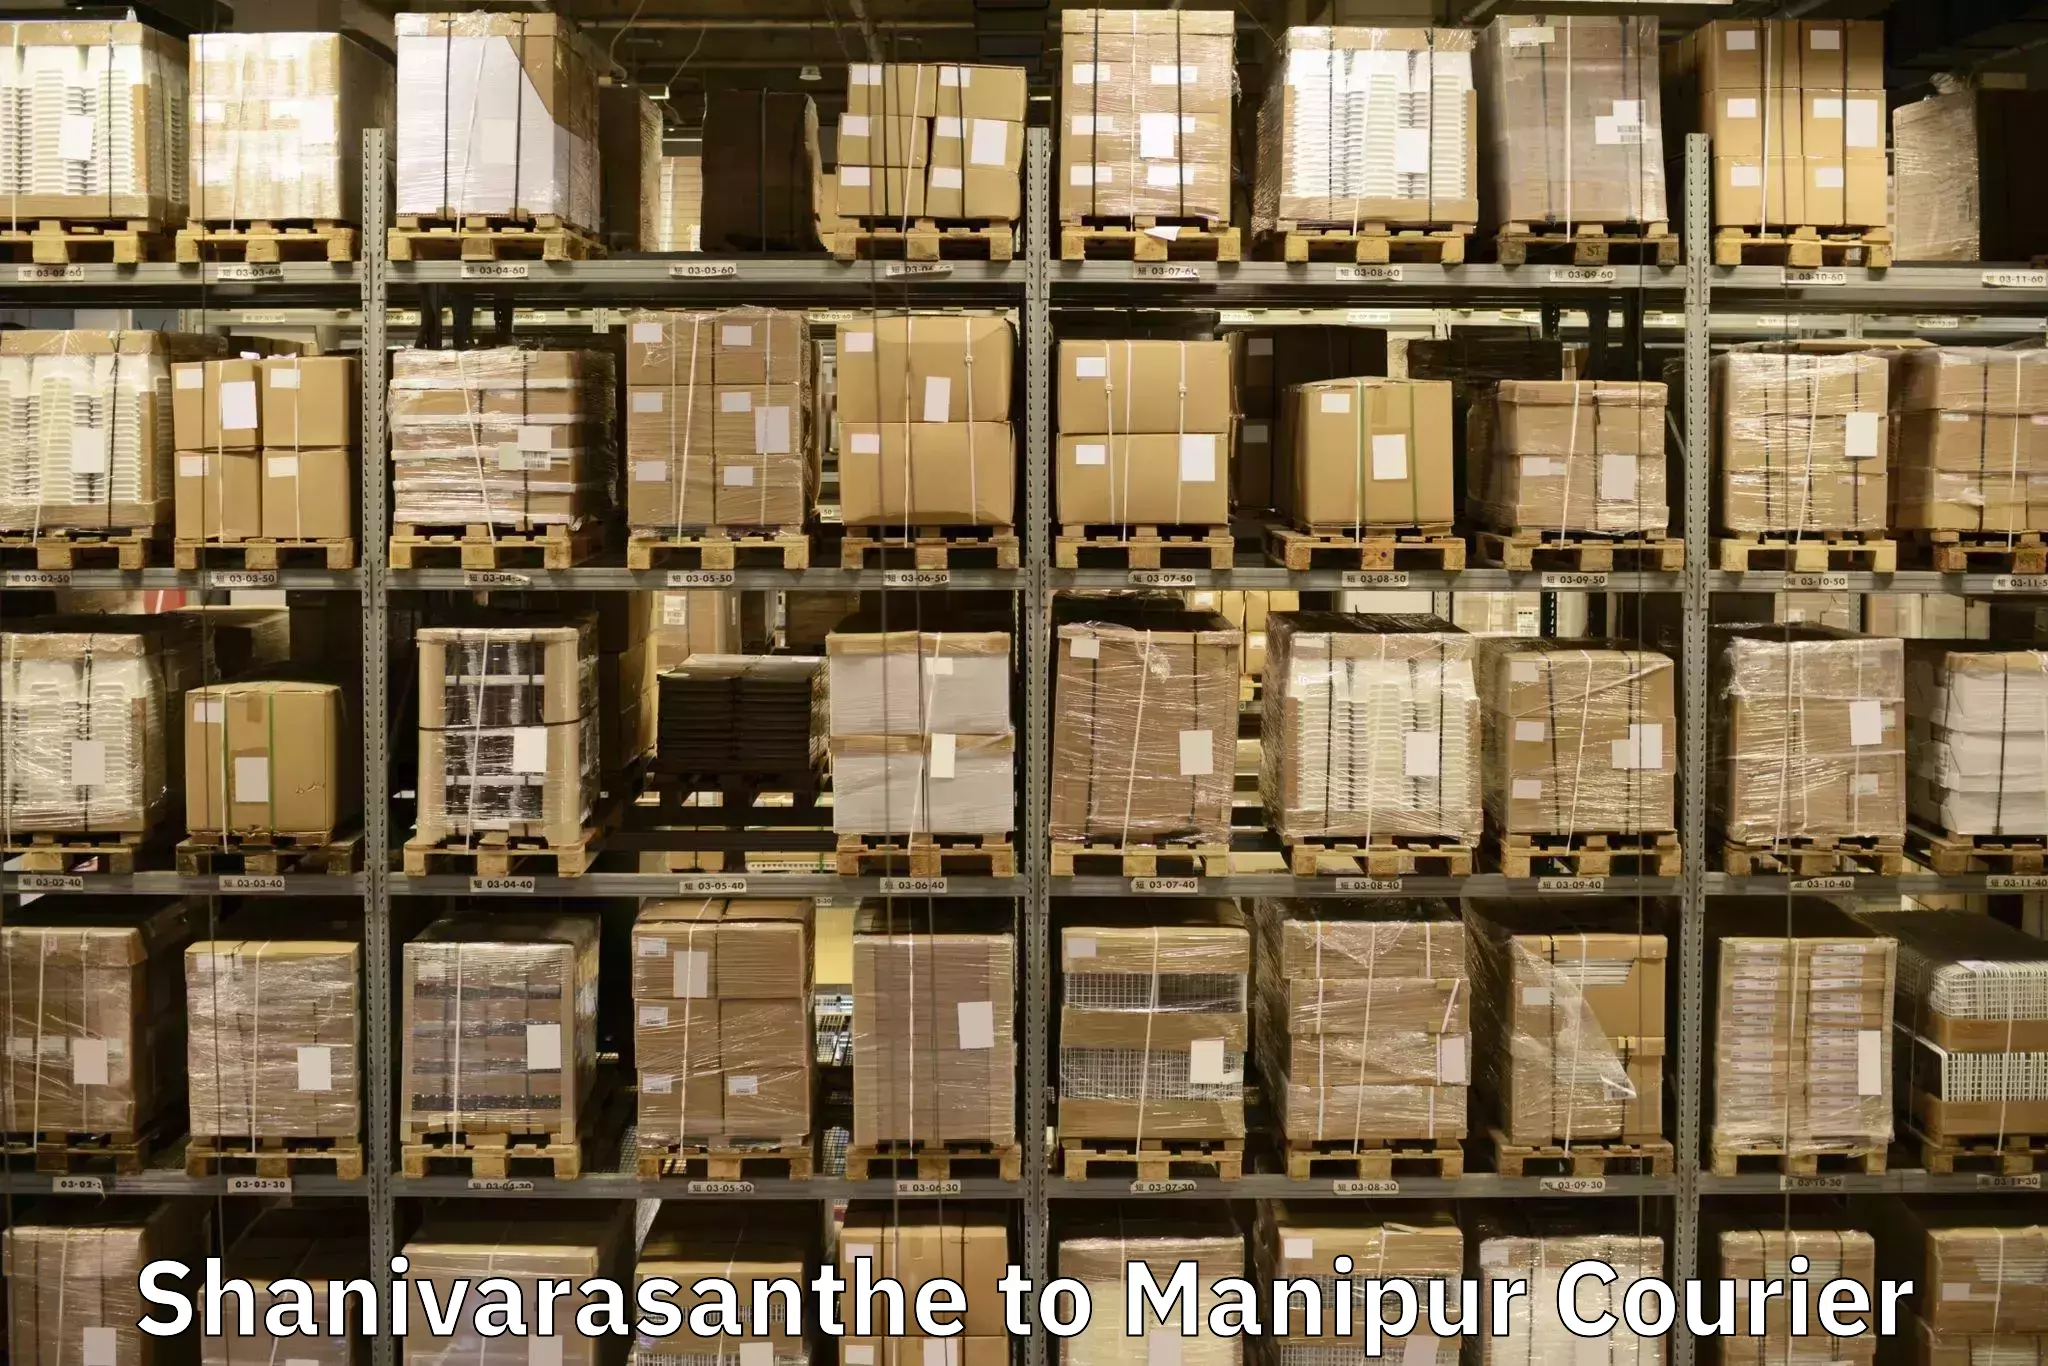 Furniture delivery service Shanivarasanthe to Churachandpur